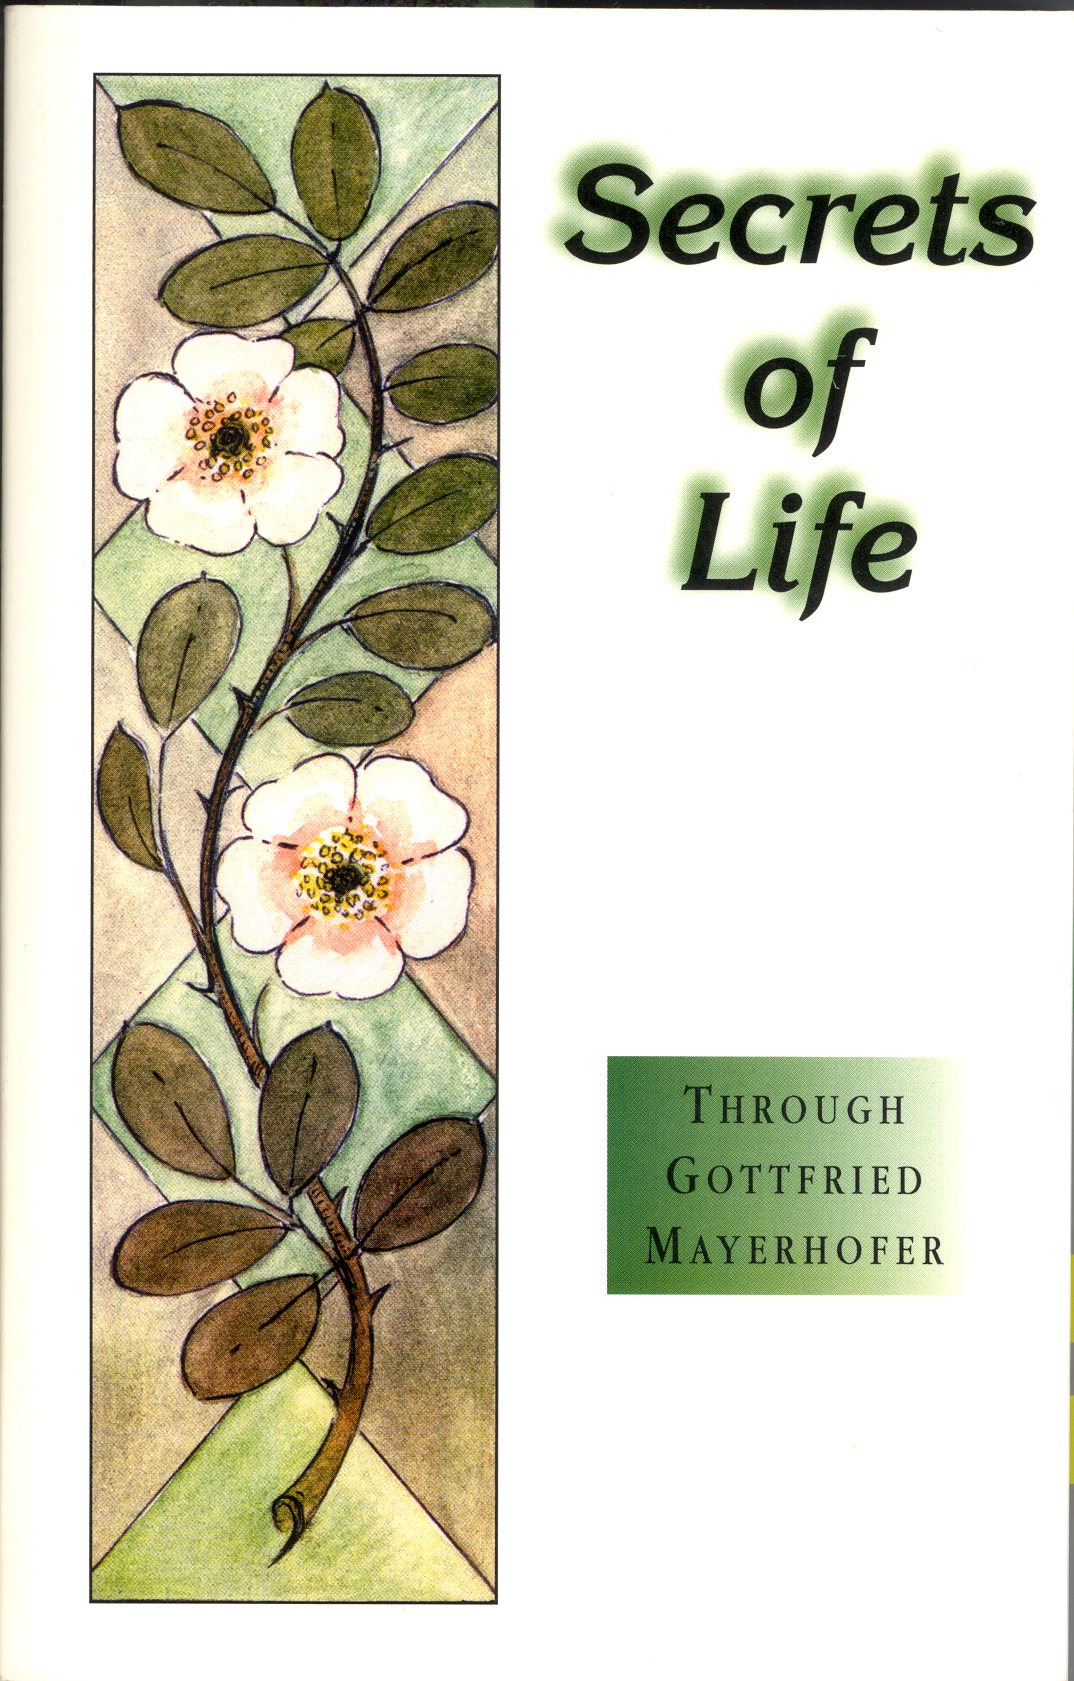 secrects of life, gottfried mayerhofer